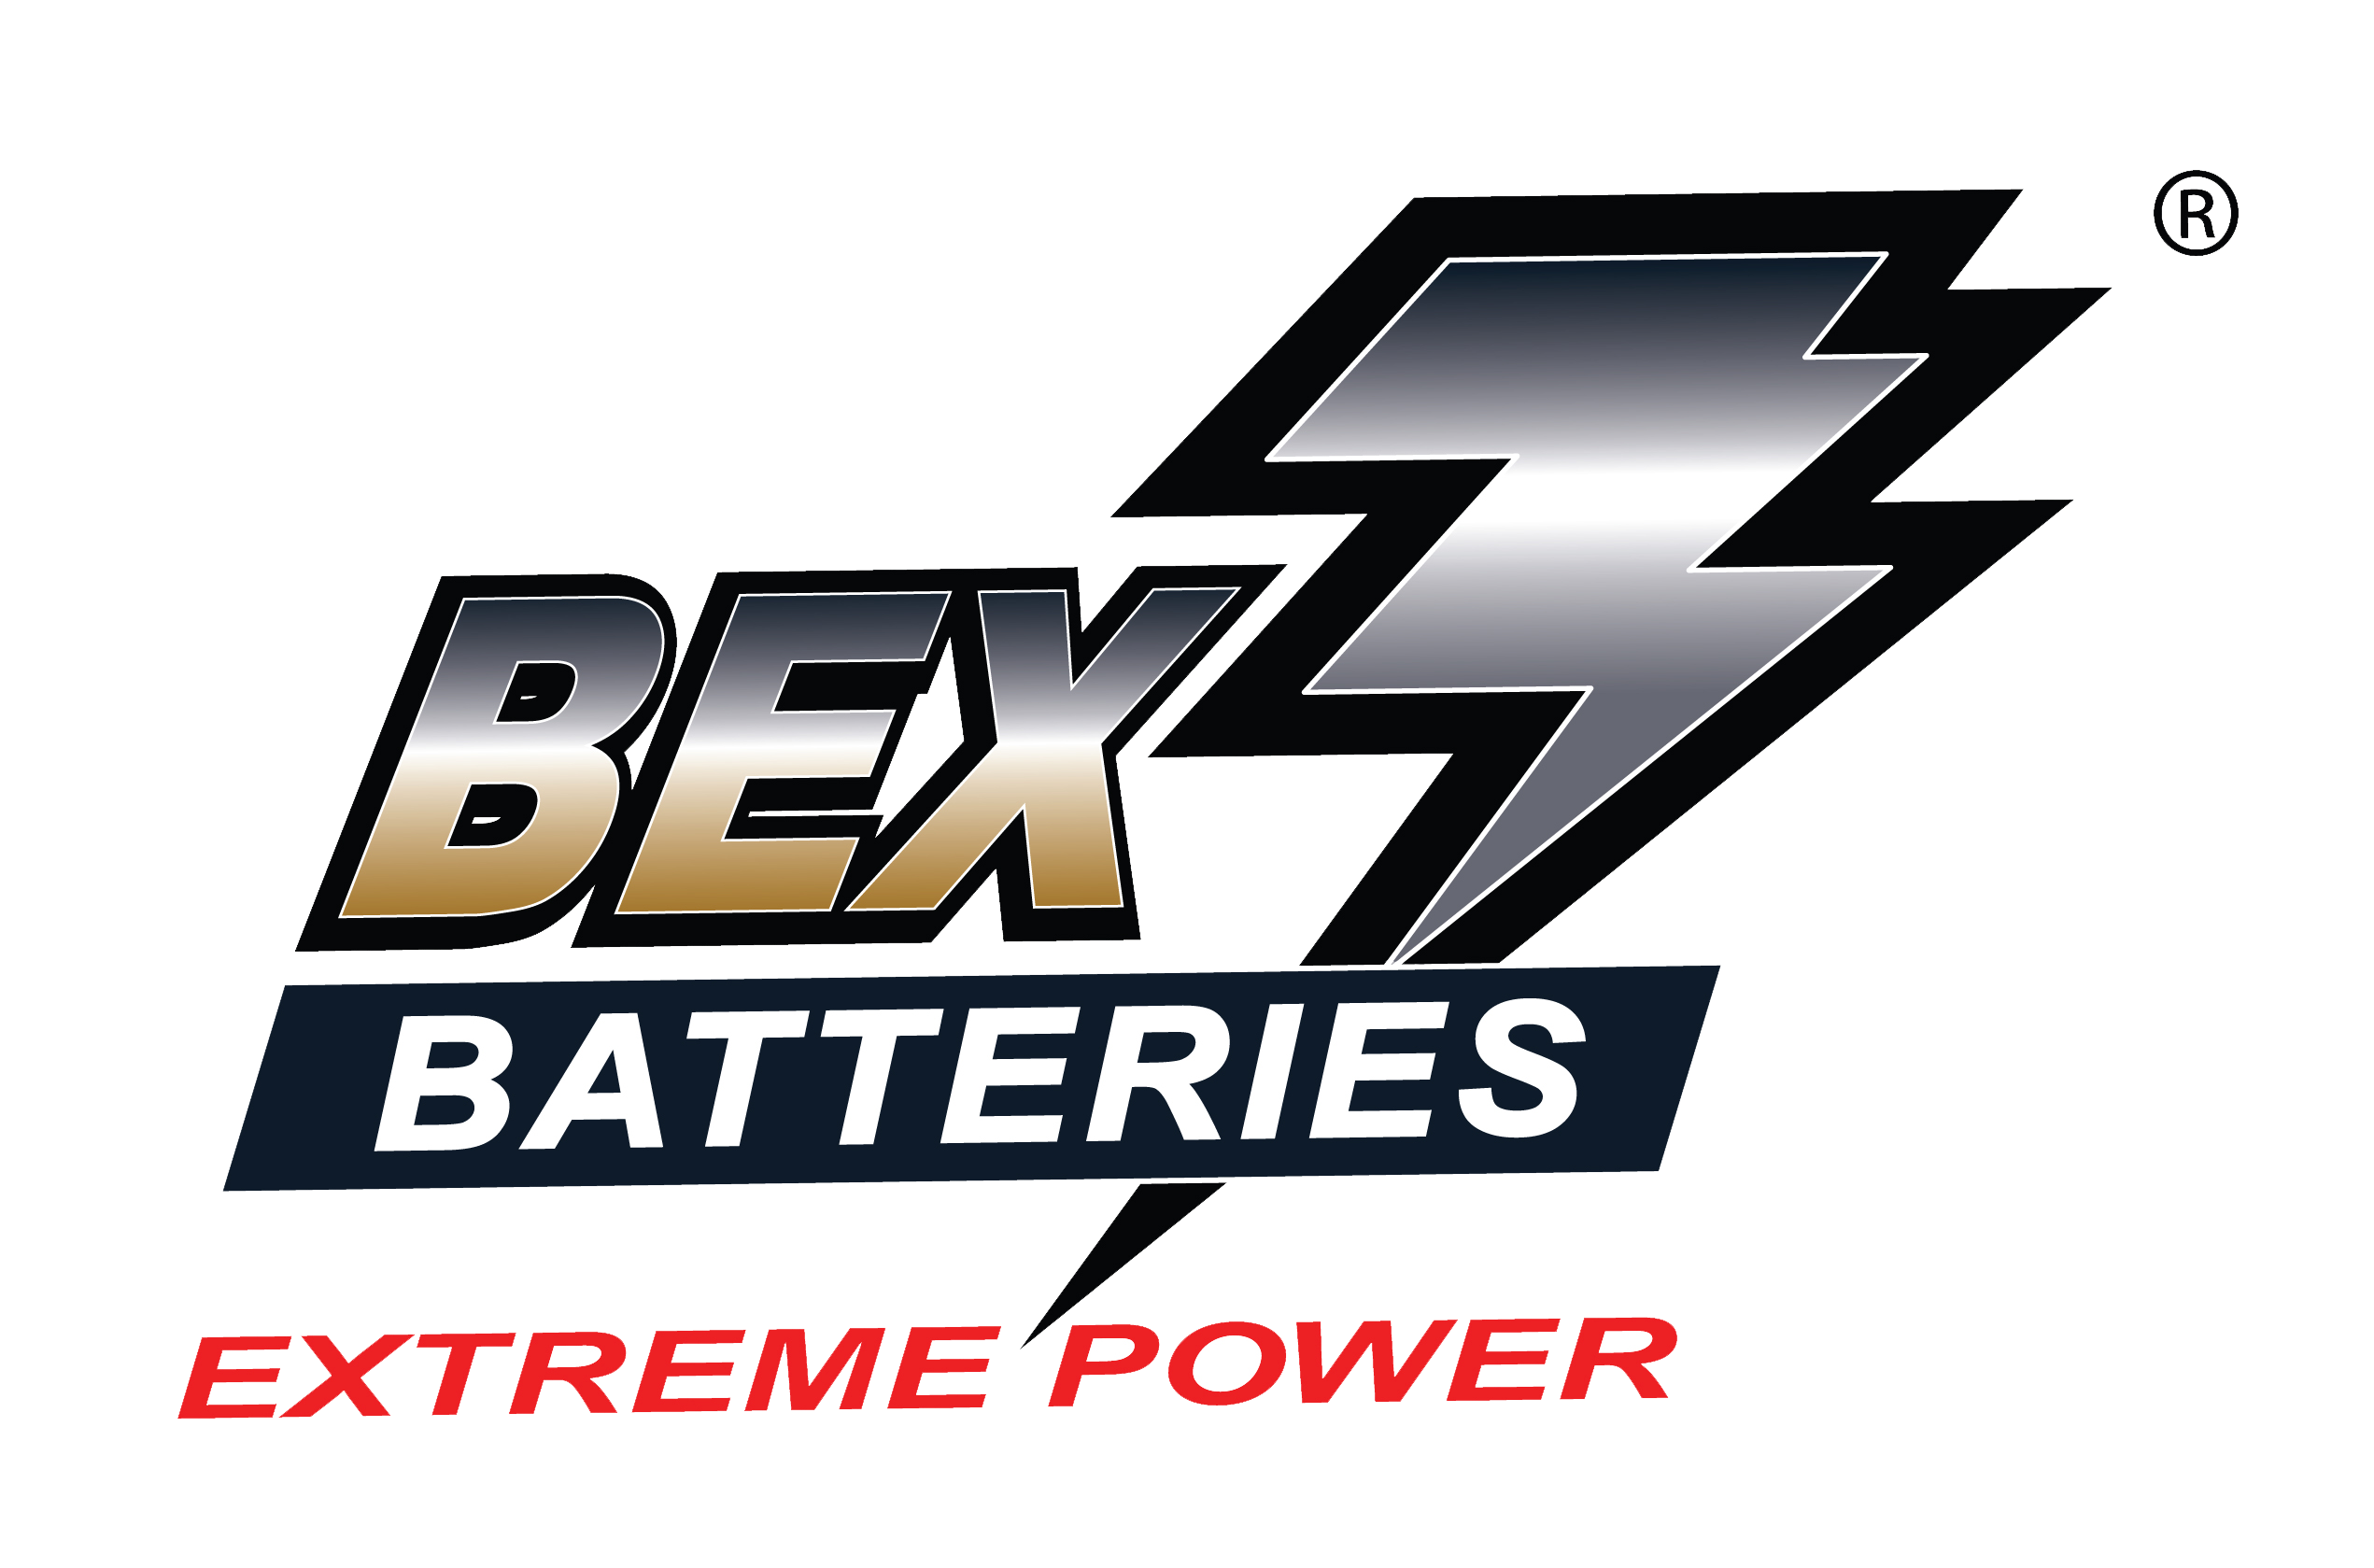 Battery Express